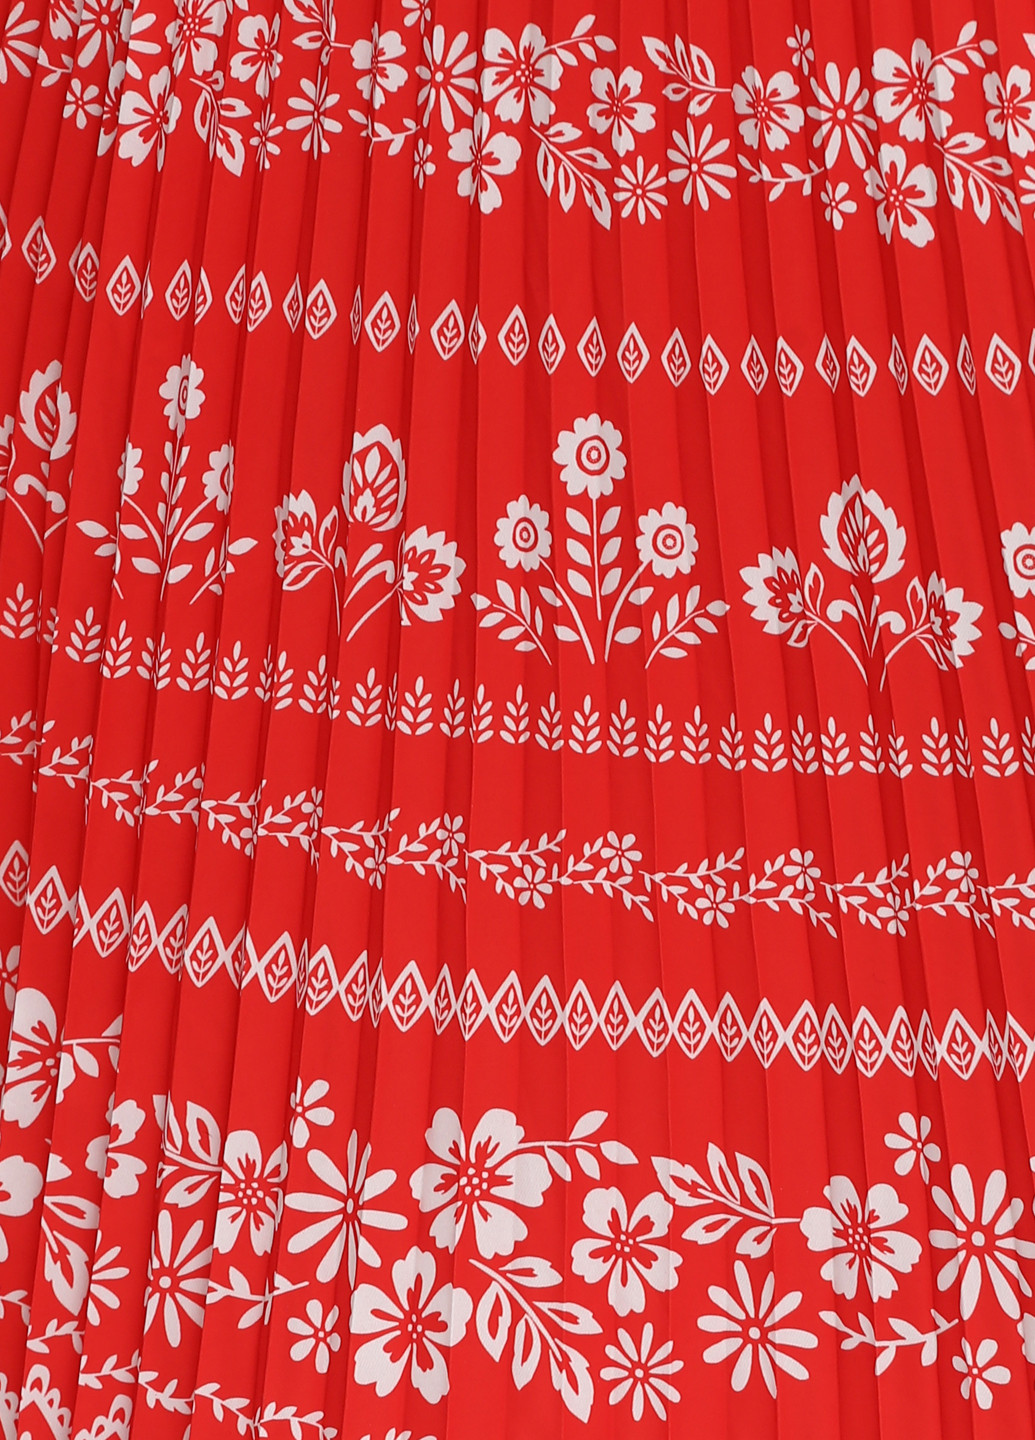 Красное вечернее платье плиссированное, с открытыми плечами Myleene Klass с орнаментом